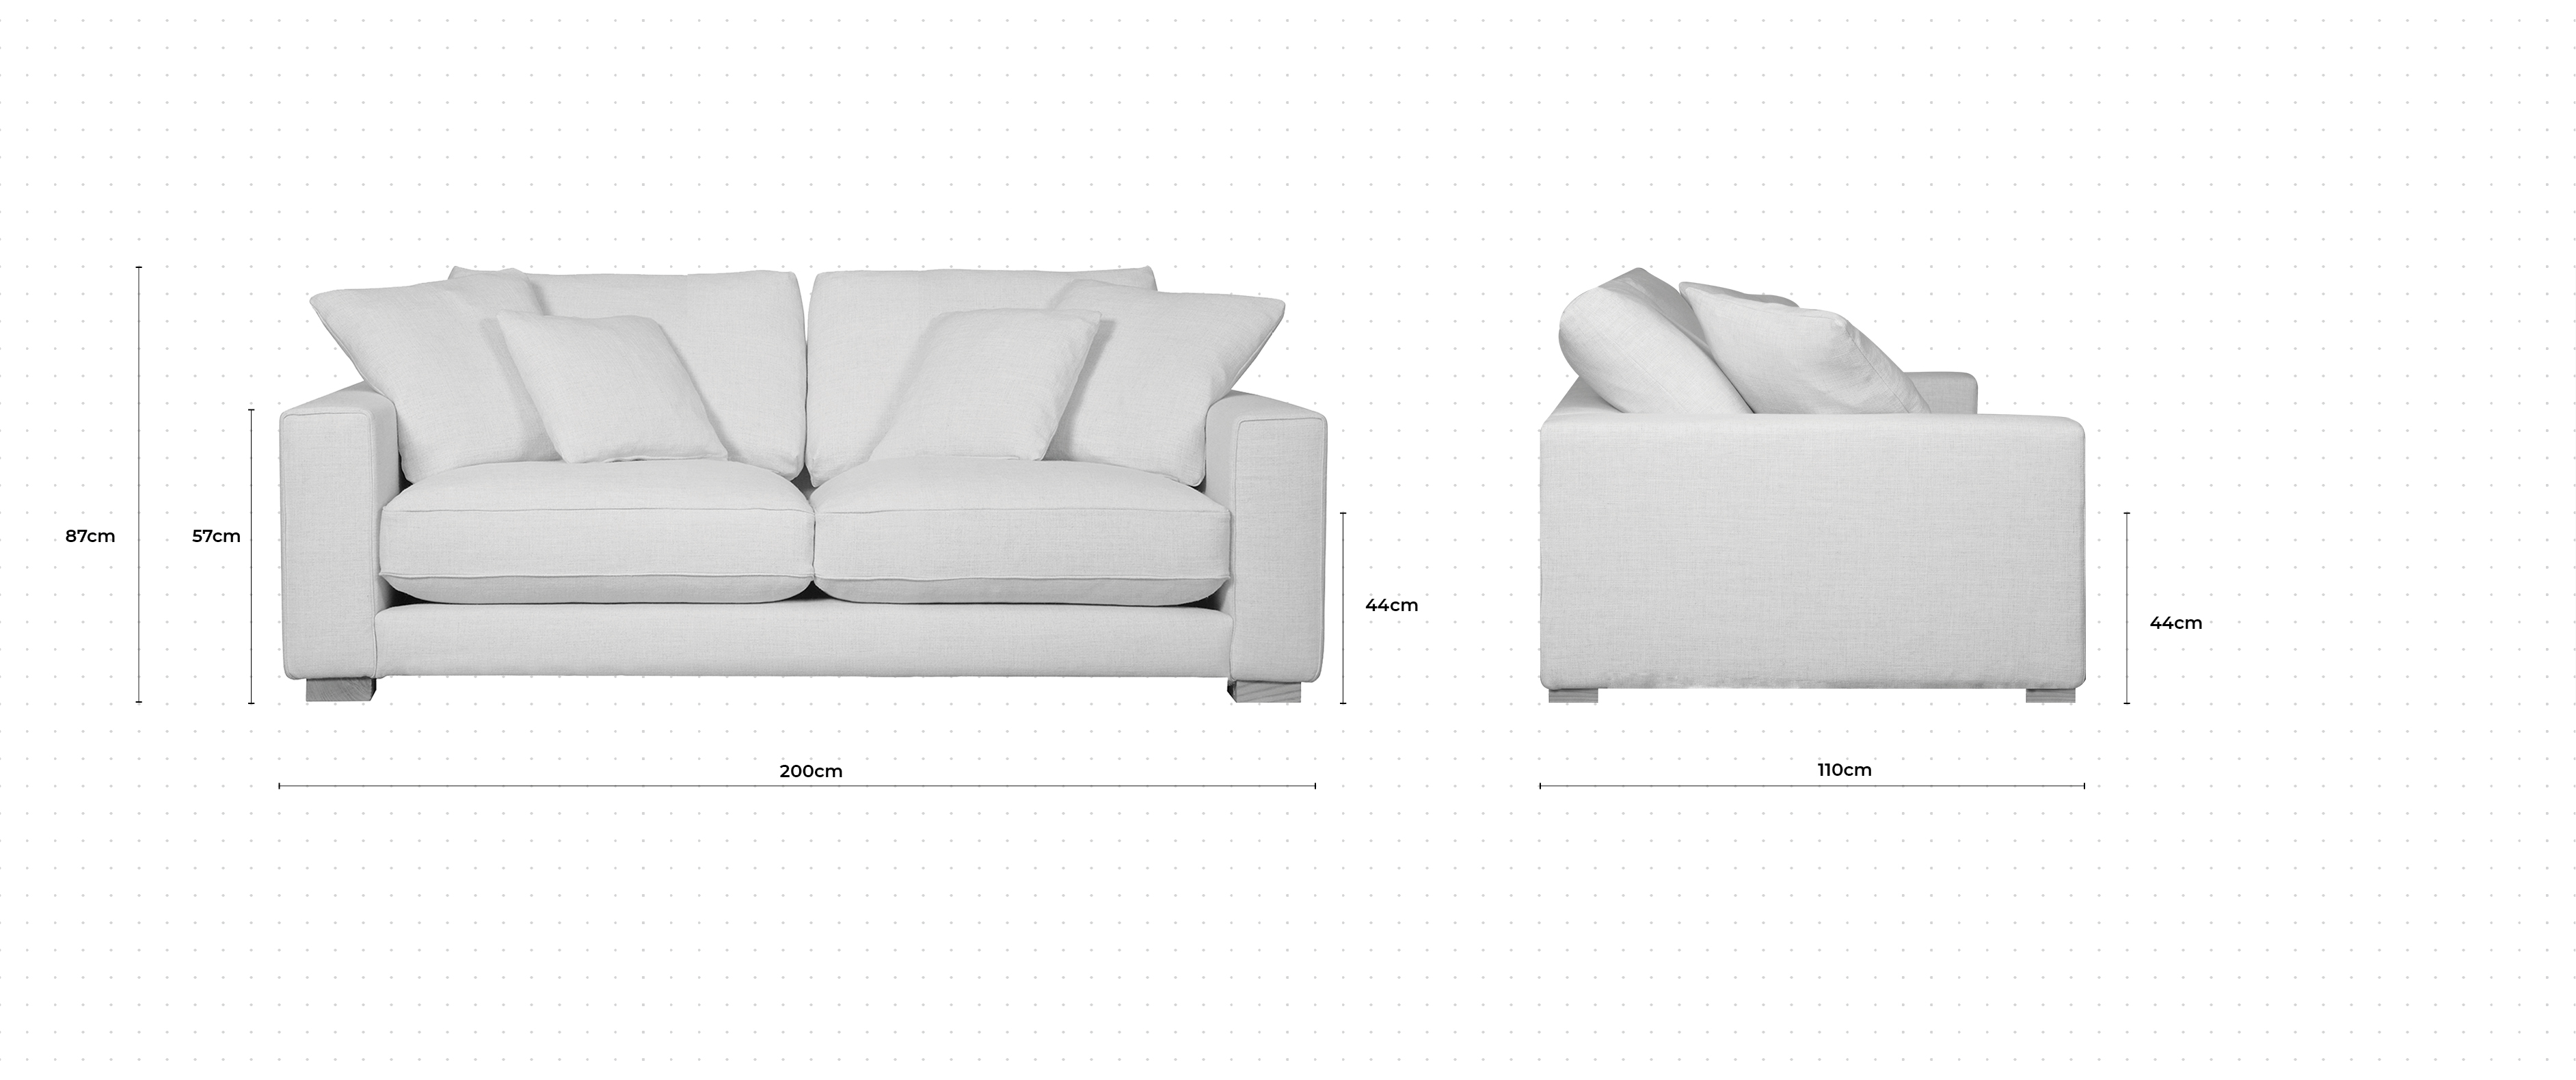 Dillon 2.5 Seater Sofa dimensions